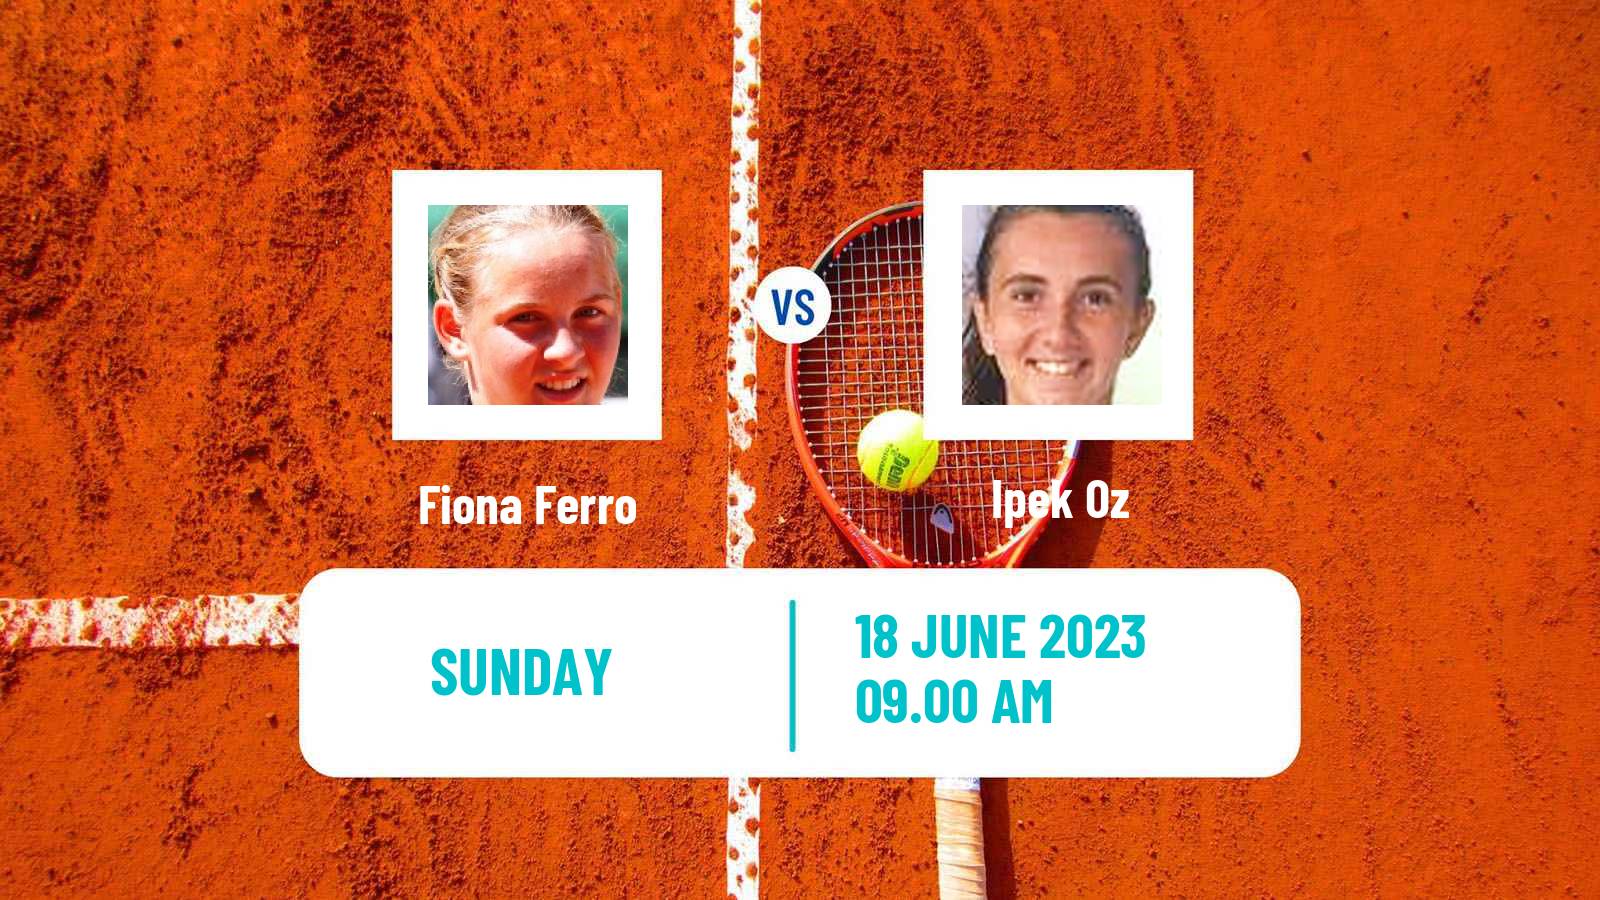 Tennis ITF W60 Biarritz Women Fiona Ferro - Ipek Oz